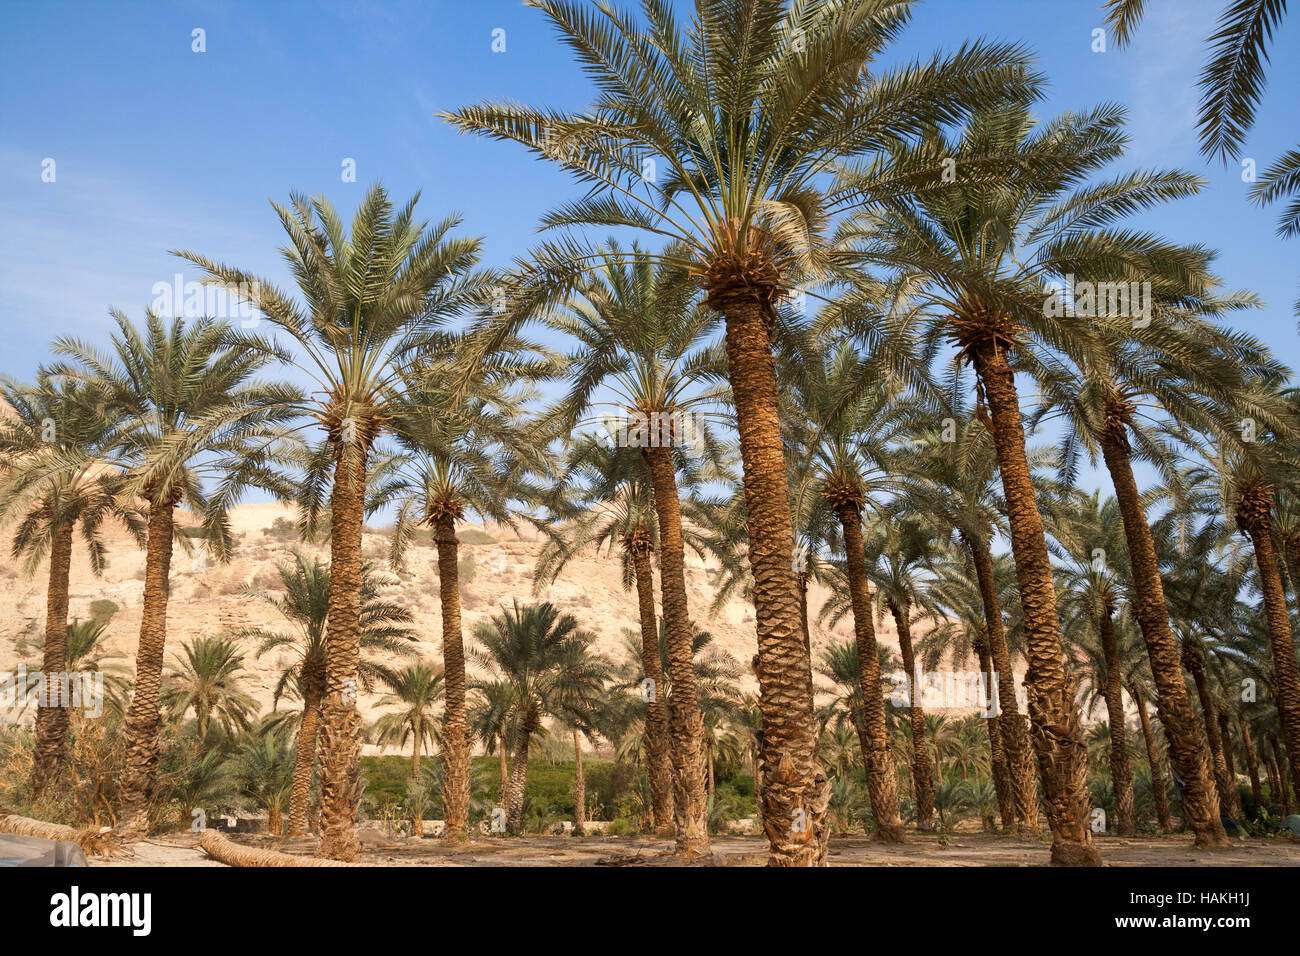 Ein Gedi oase in the Negev desert near the Dead Sea, Israel Stock Photo